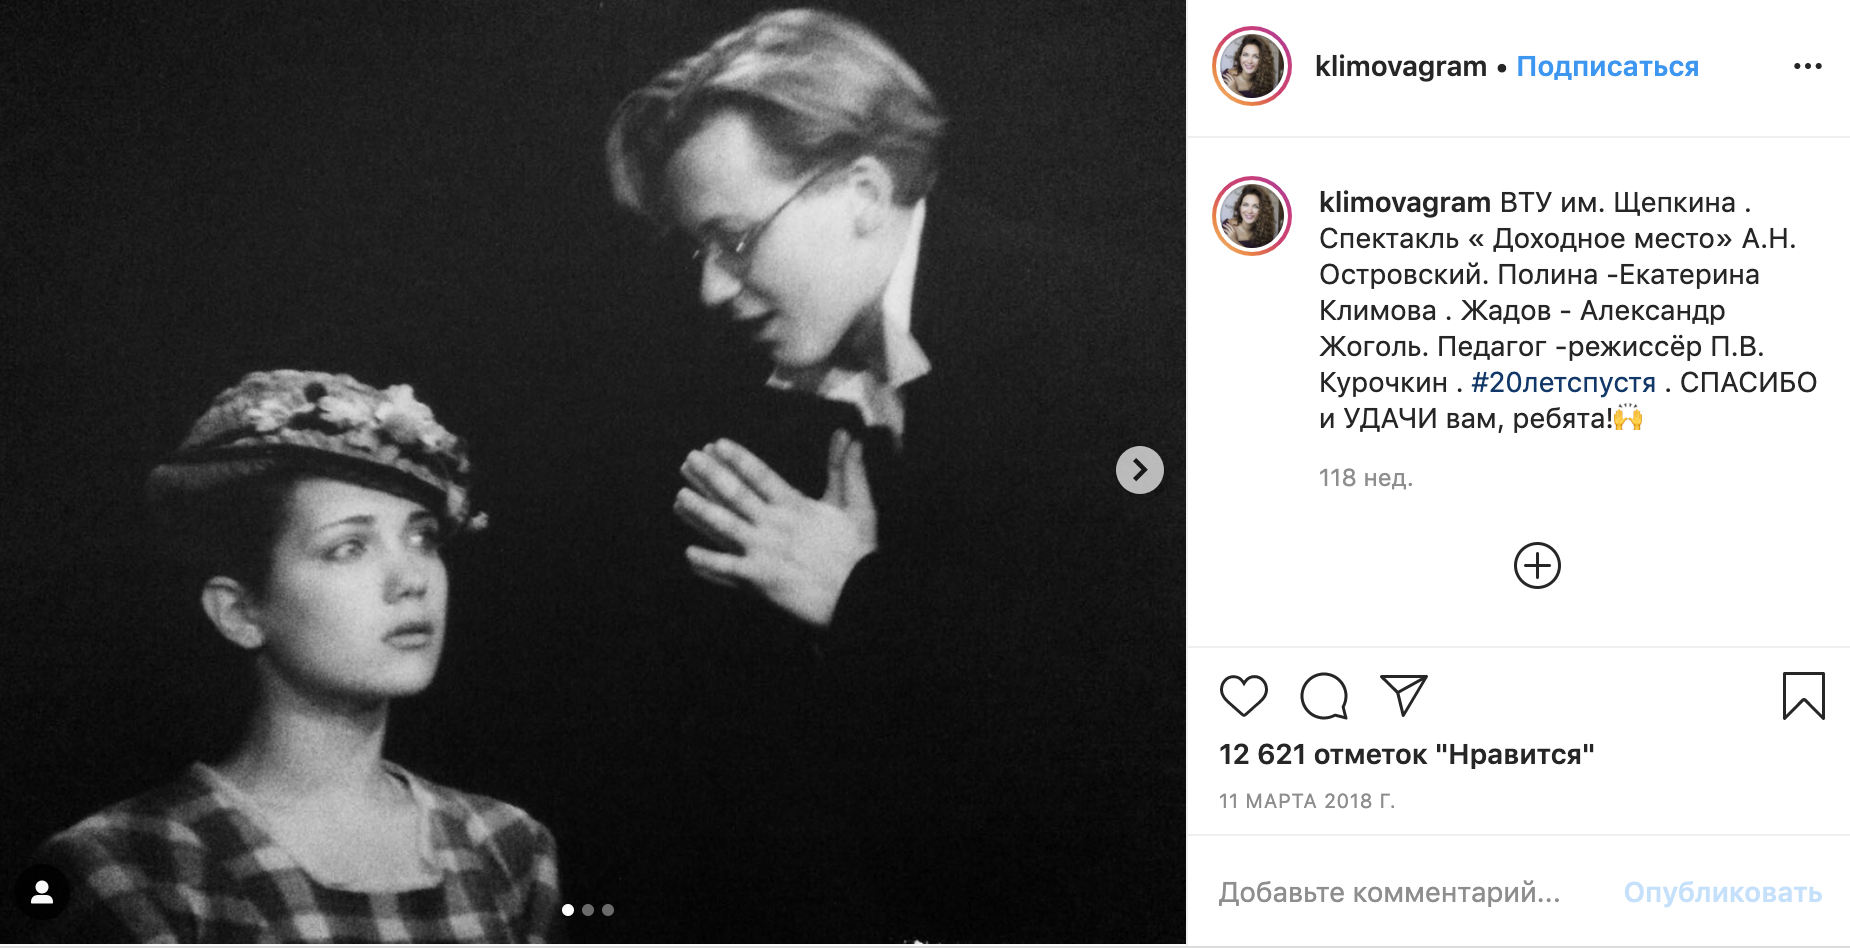 Е. Климова в бытность студенткой Щукинского училища играет в спектакле